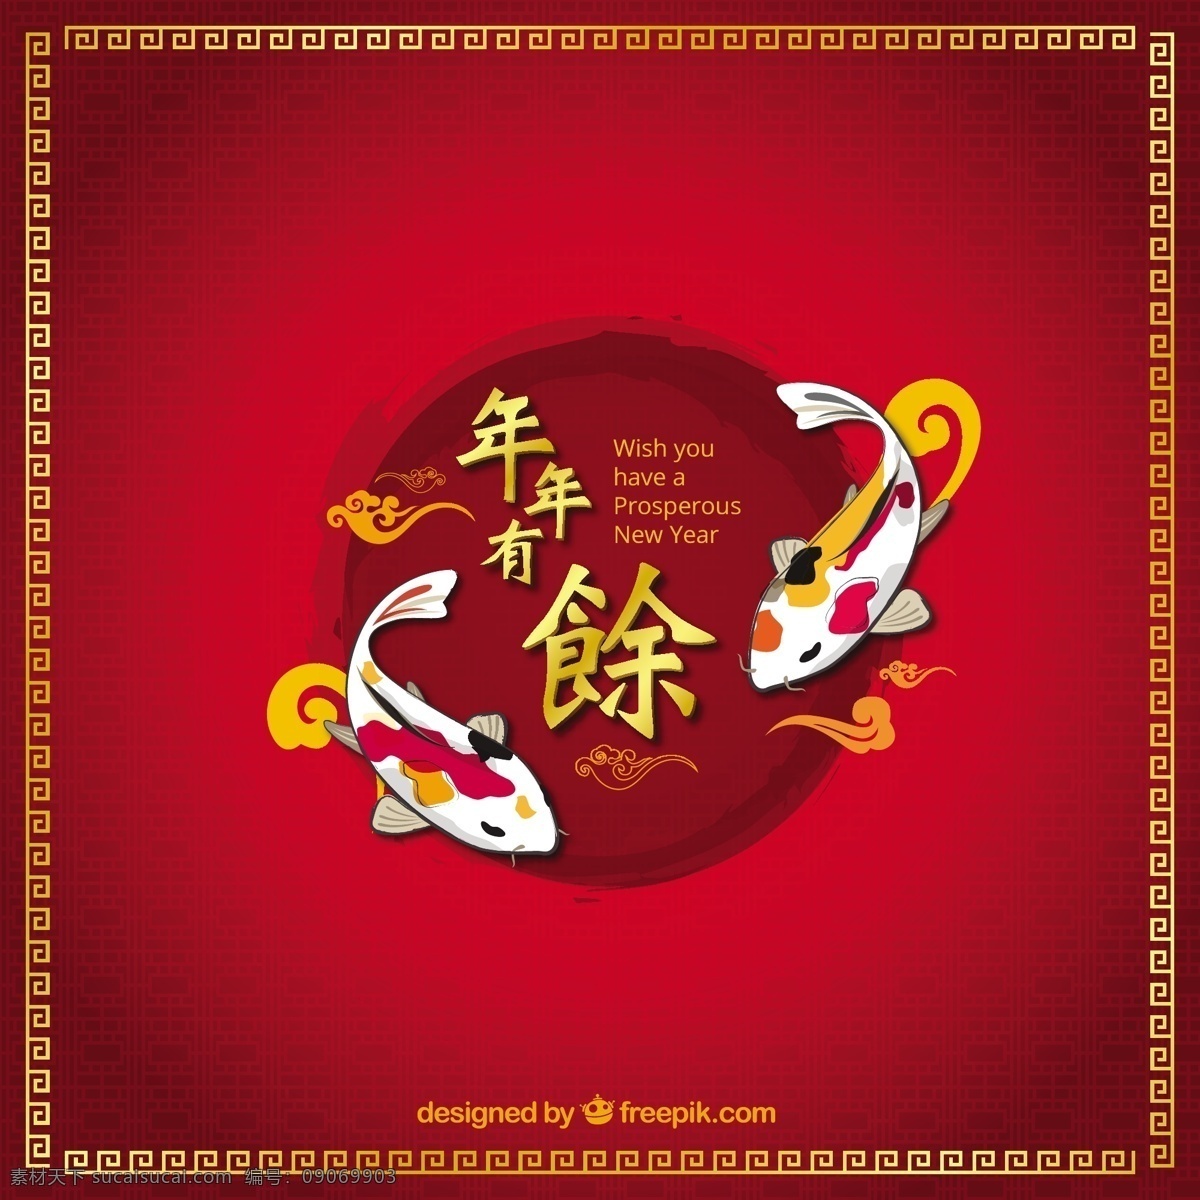 中国农历新年 背景 派对 抽象 新年 新的一年 中国 新 年 快乐 红色 红色背景 庆祝 事件 假期 2016 节日快乐